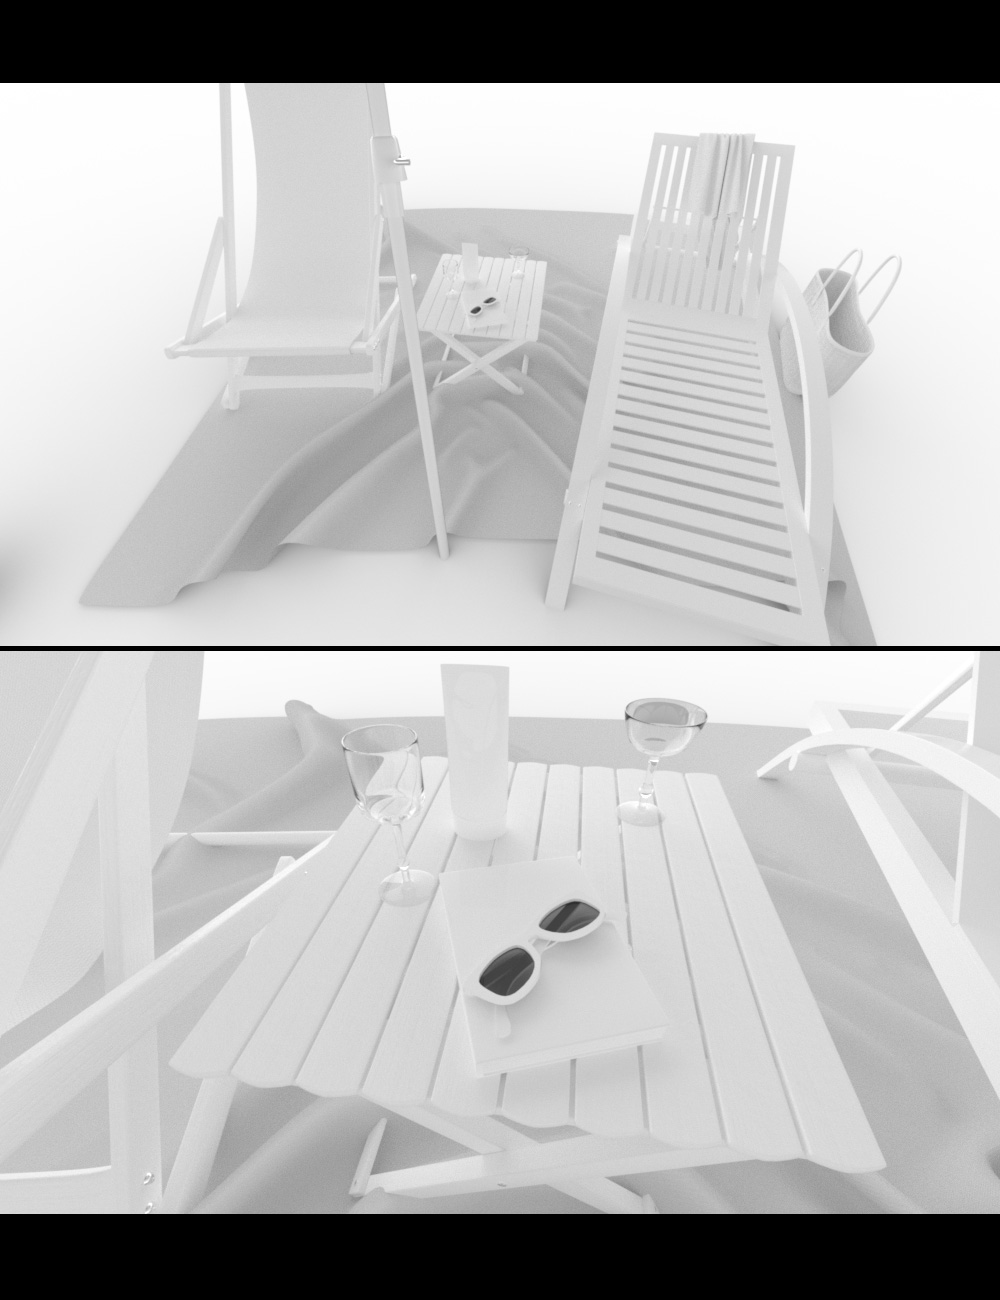 Beach Fun by: DreamlightImagineX, 3D Models by Daz 3D